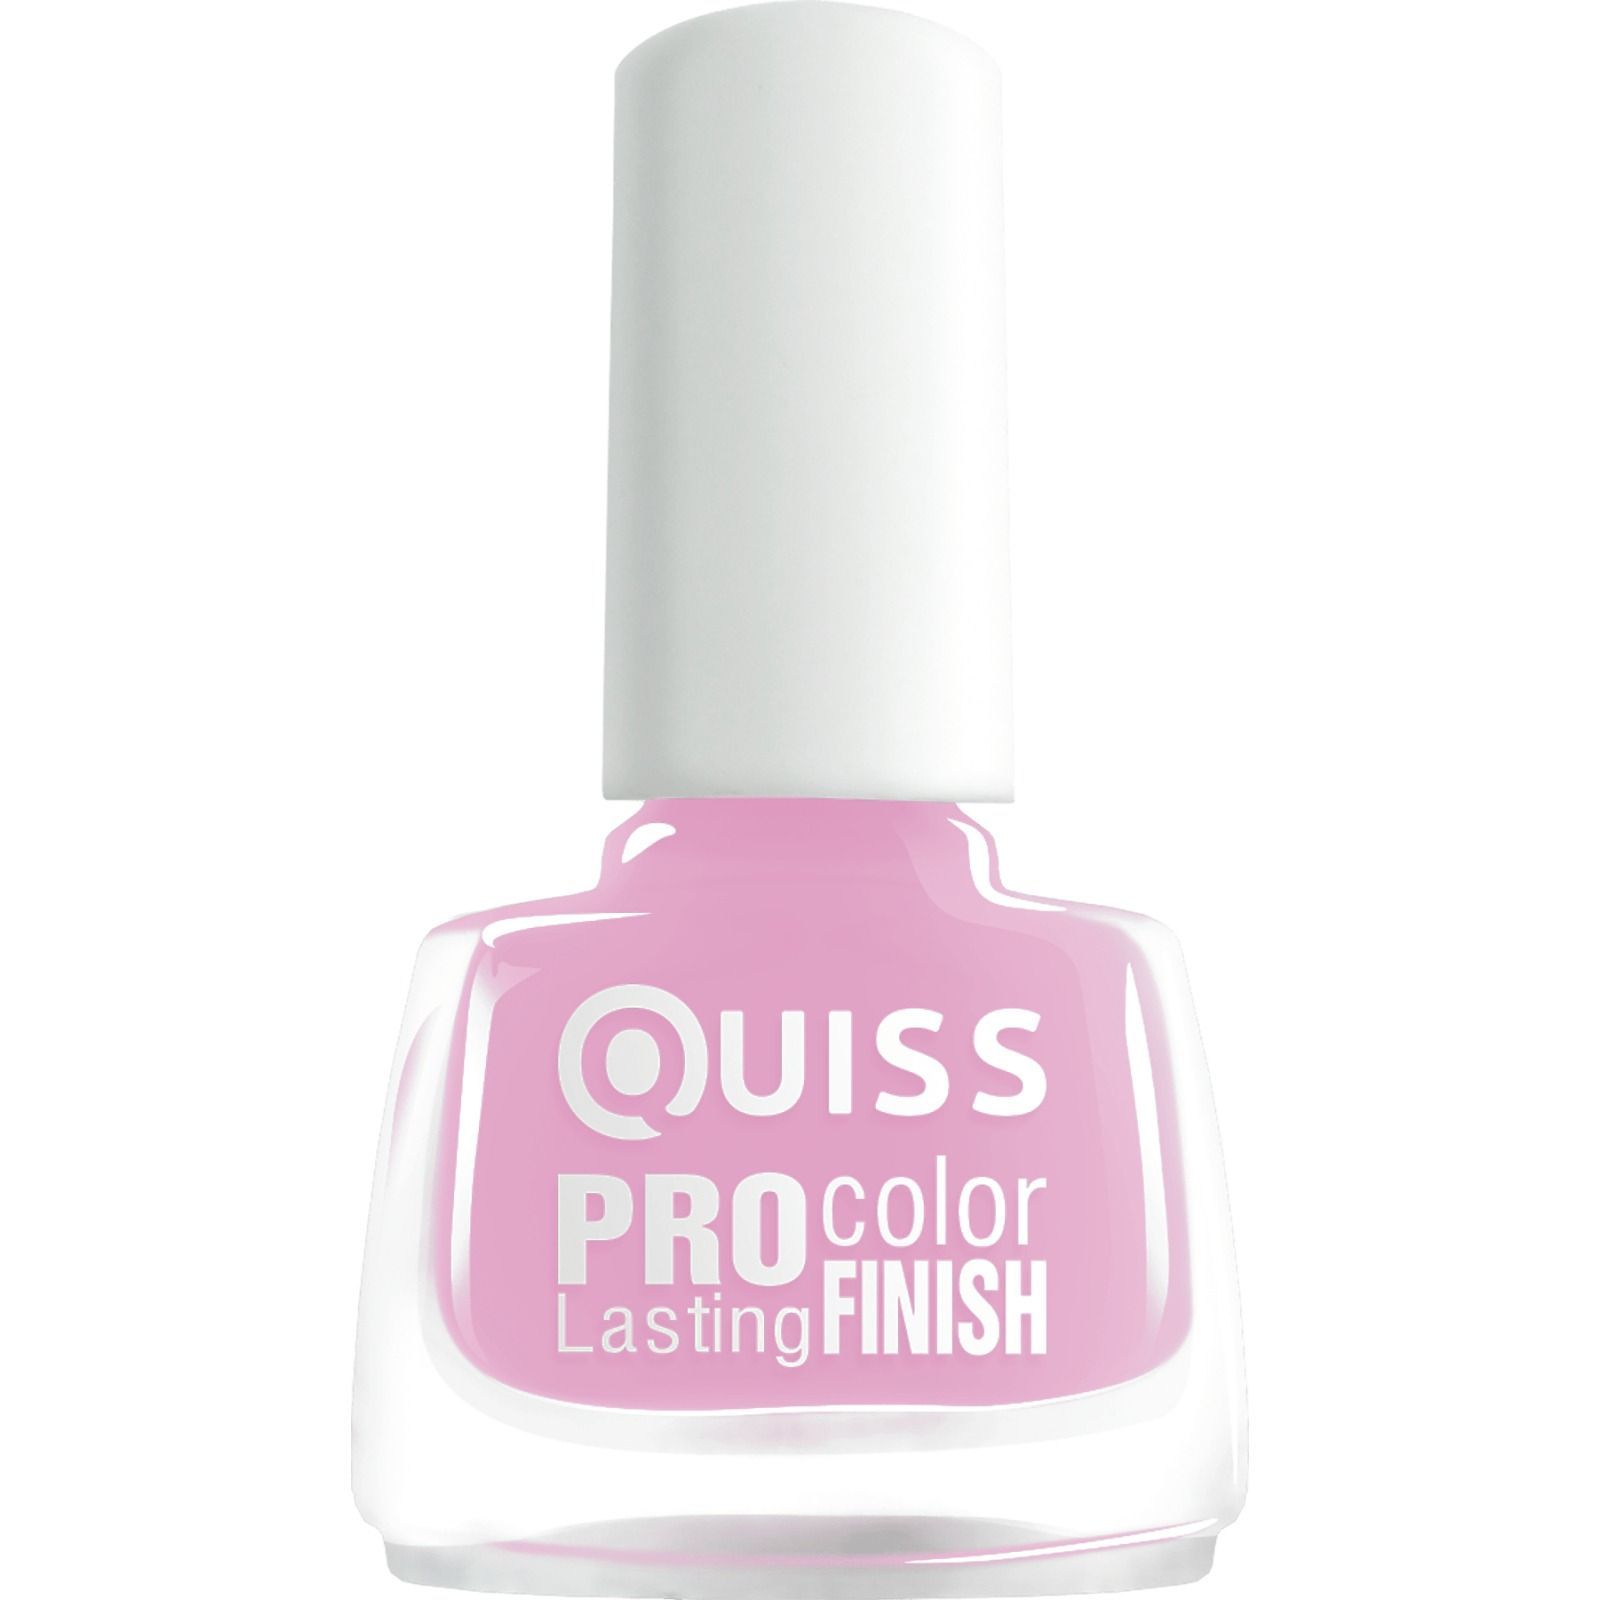 Лак для нігтів Quiss Pro Color Lasting Finish відтінок 63, 6 мл - фото 1